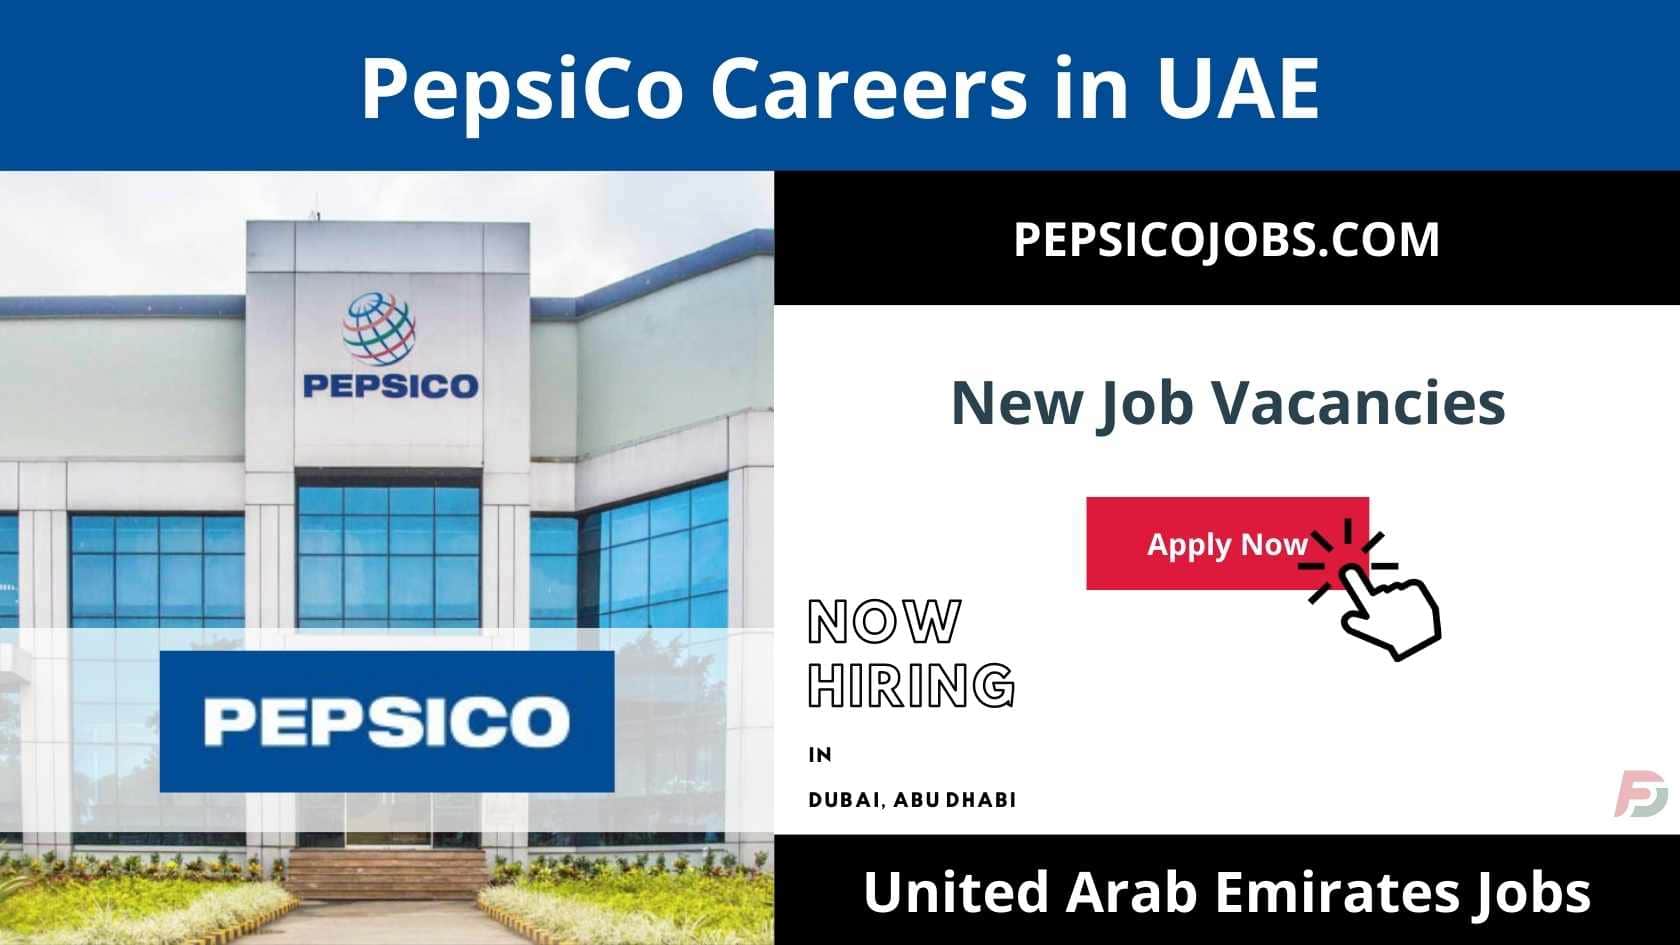 PepsiCo Careers in UAE